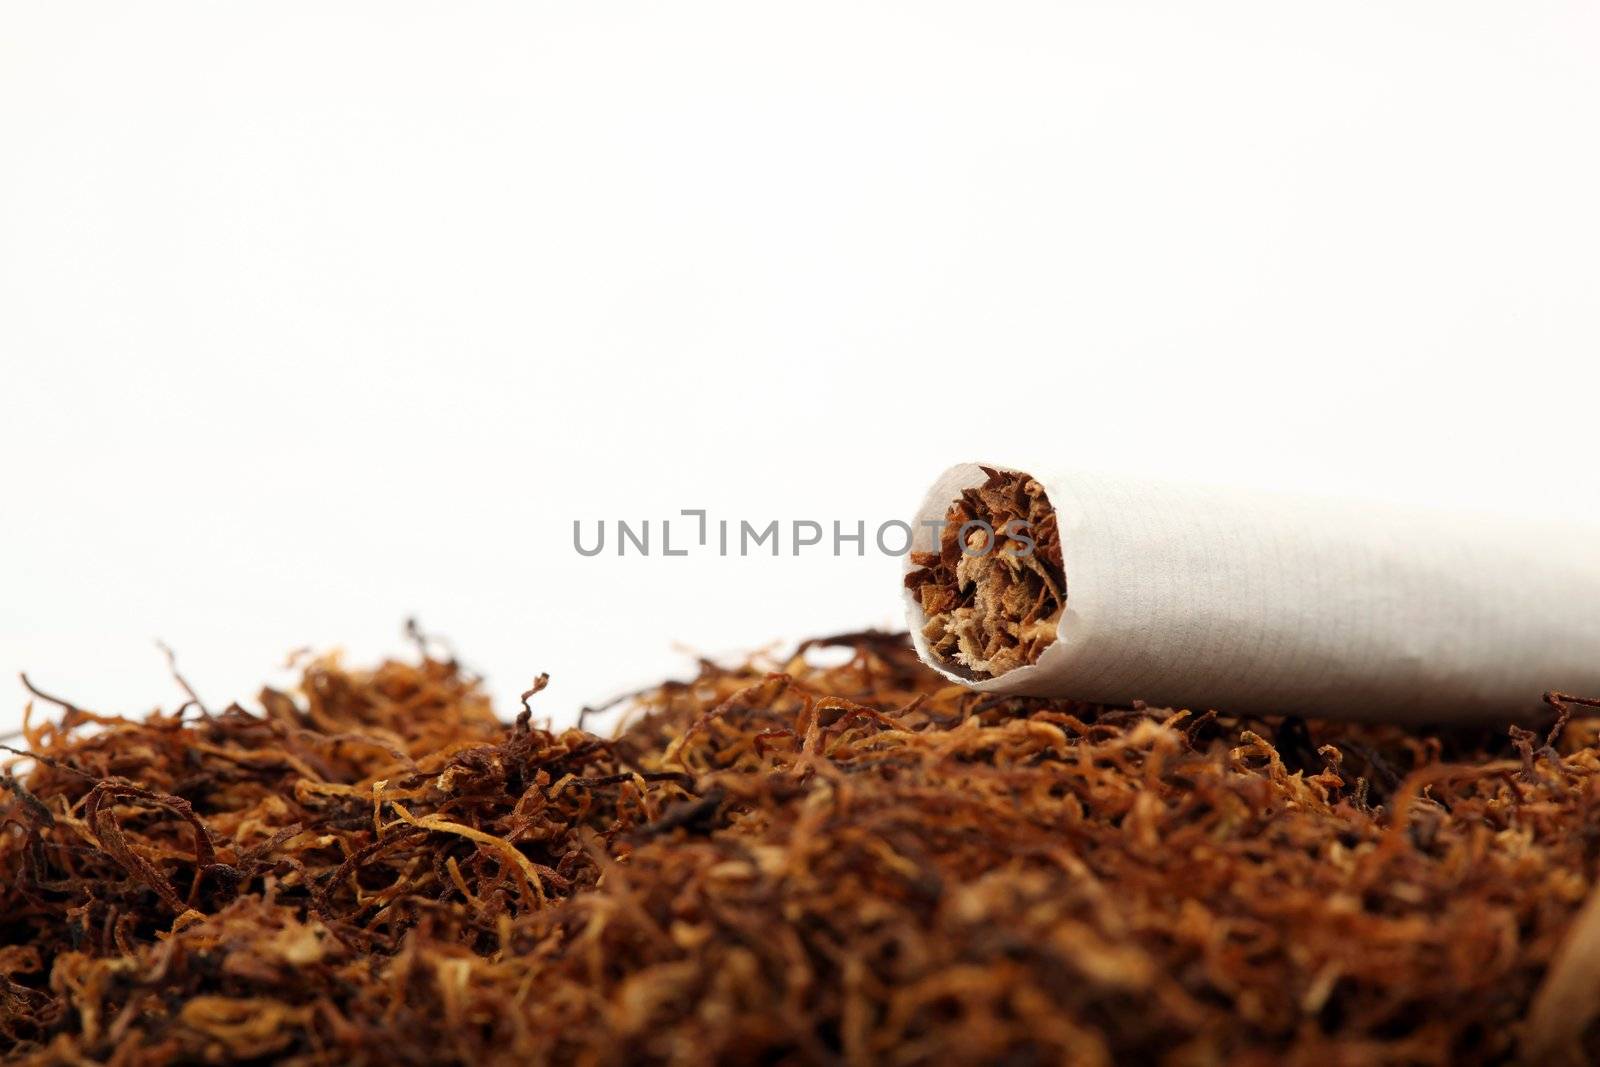 tabacco crop by forwardcom